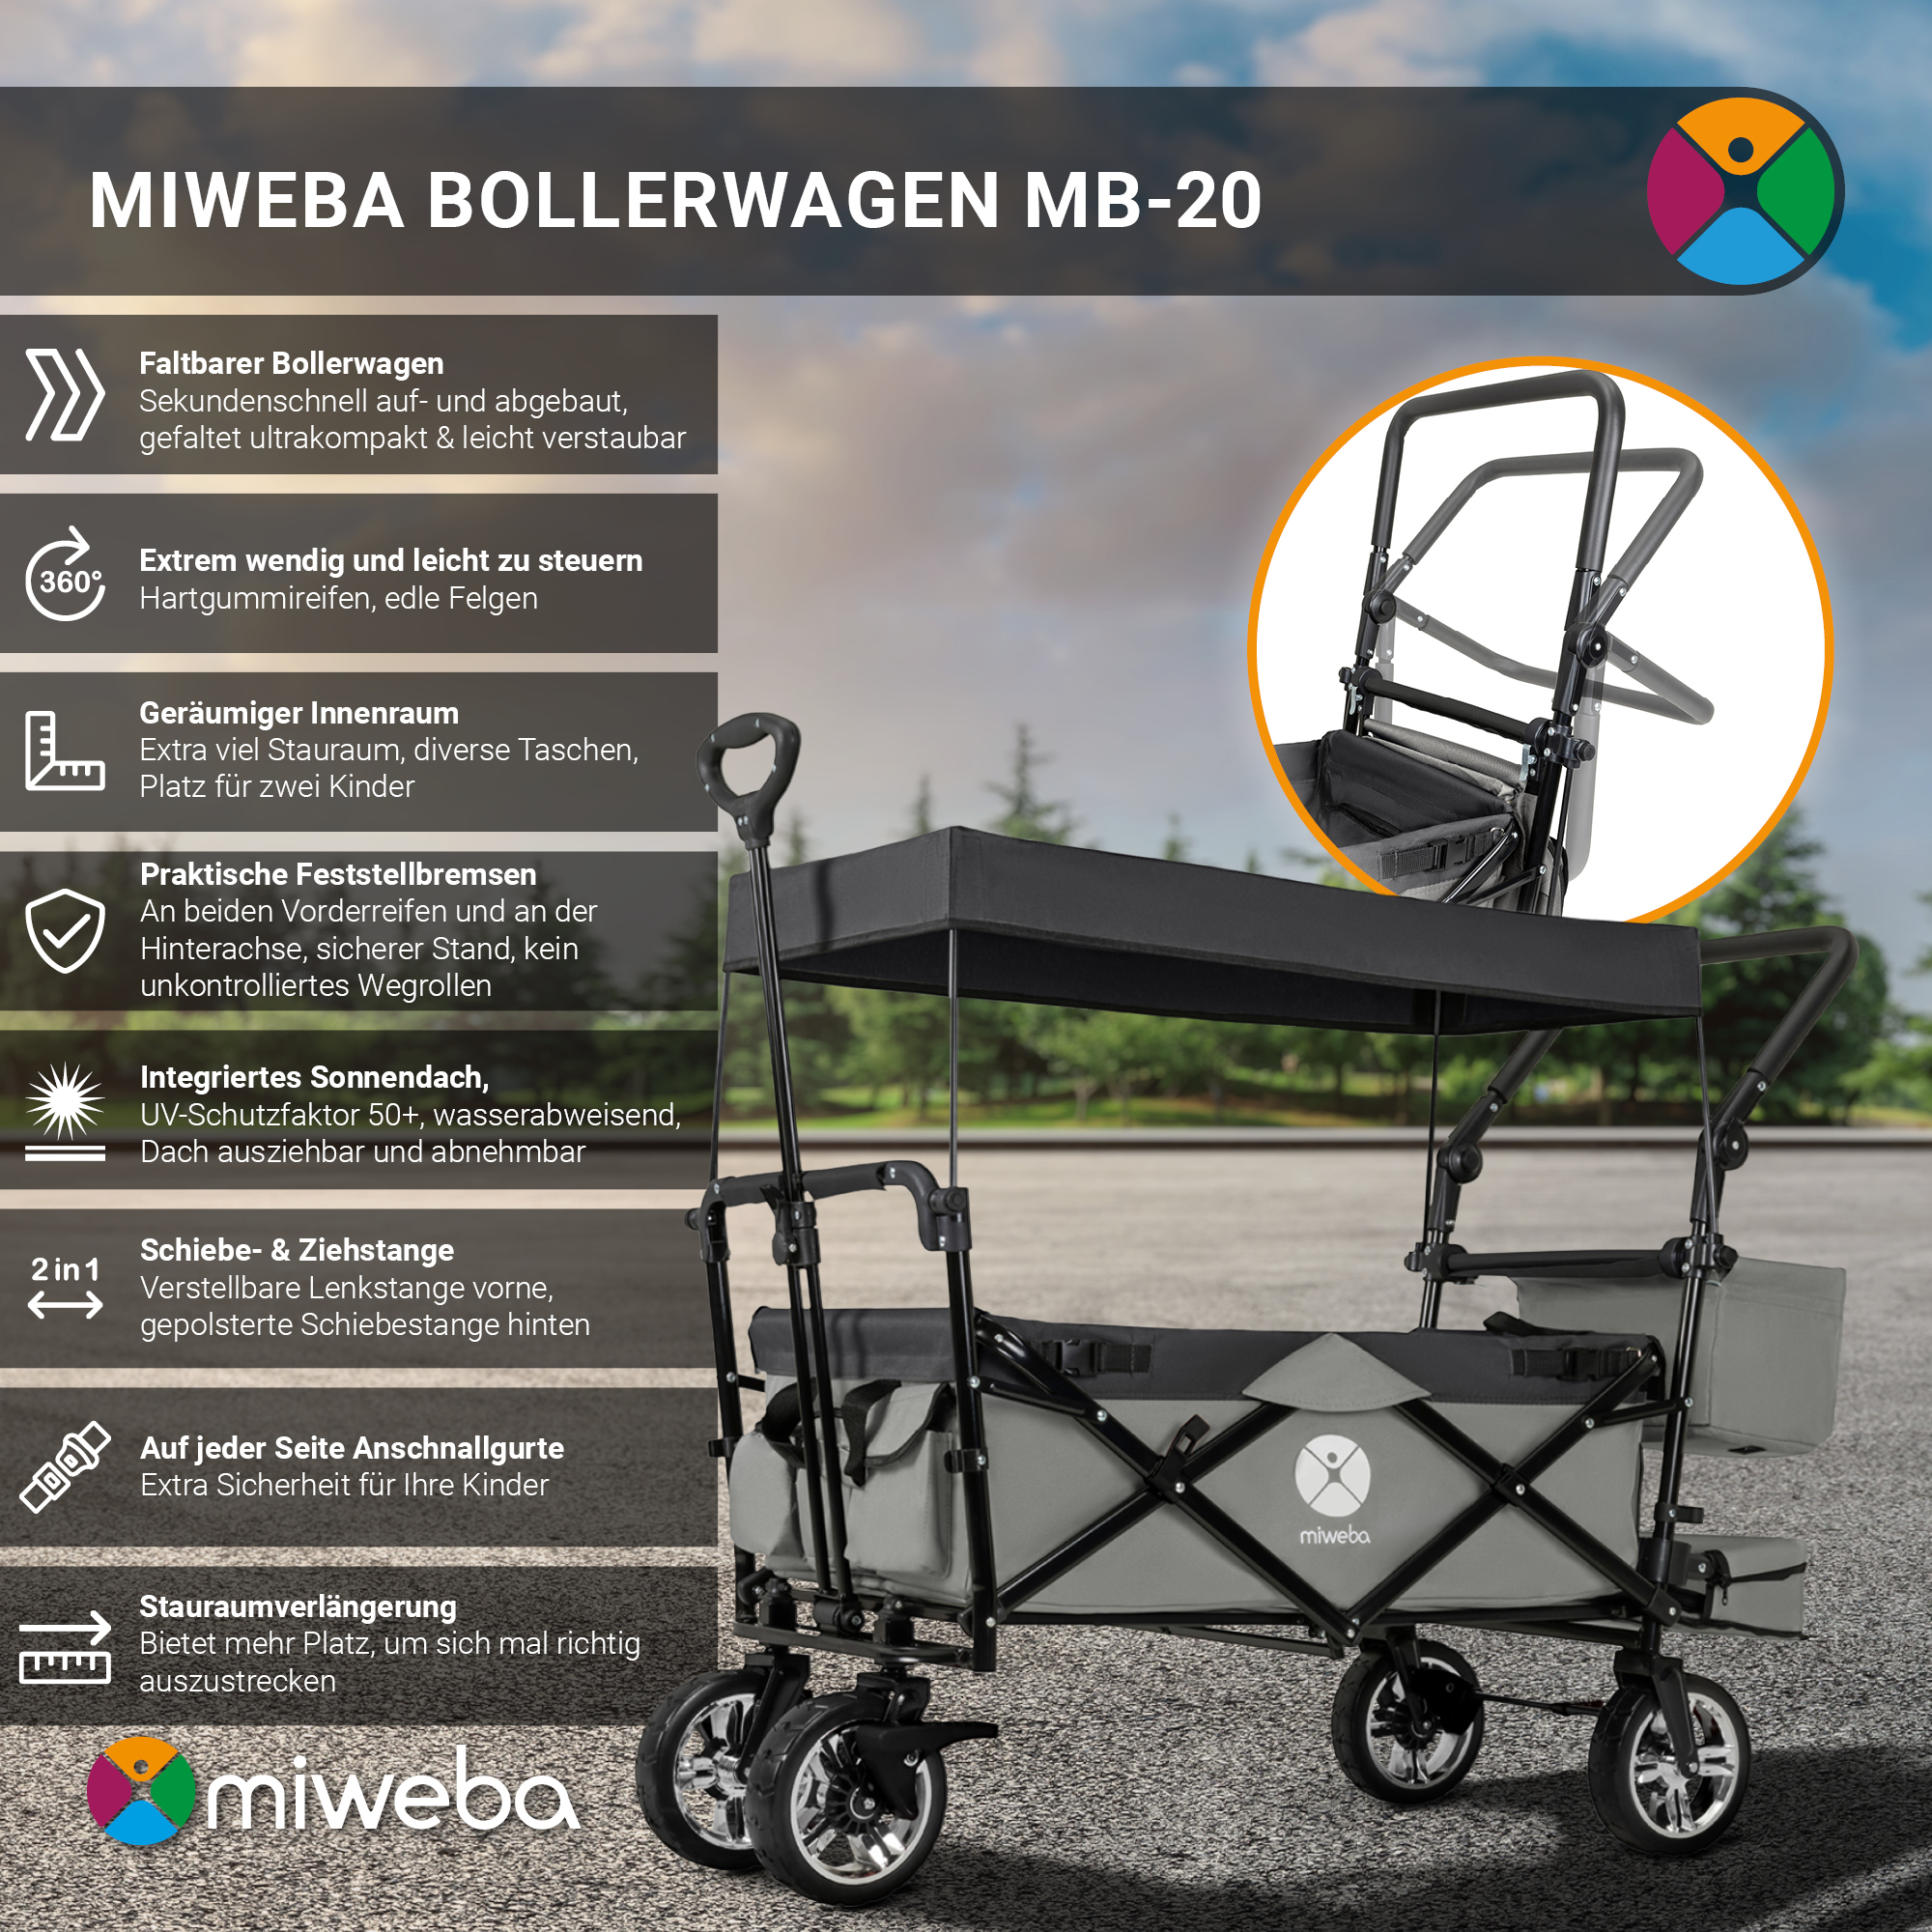 Bollerwagen, MIWEBA MB-20 Königsblau Grau